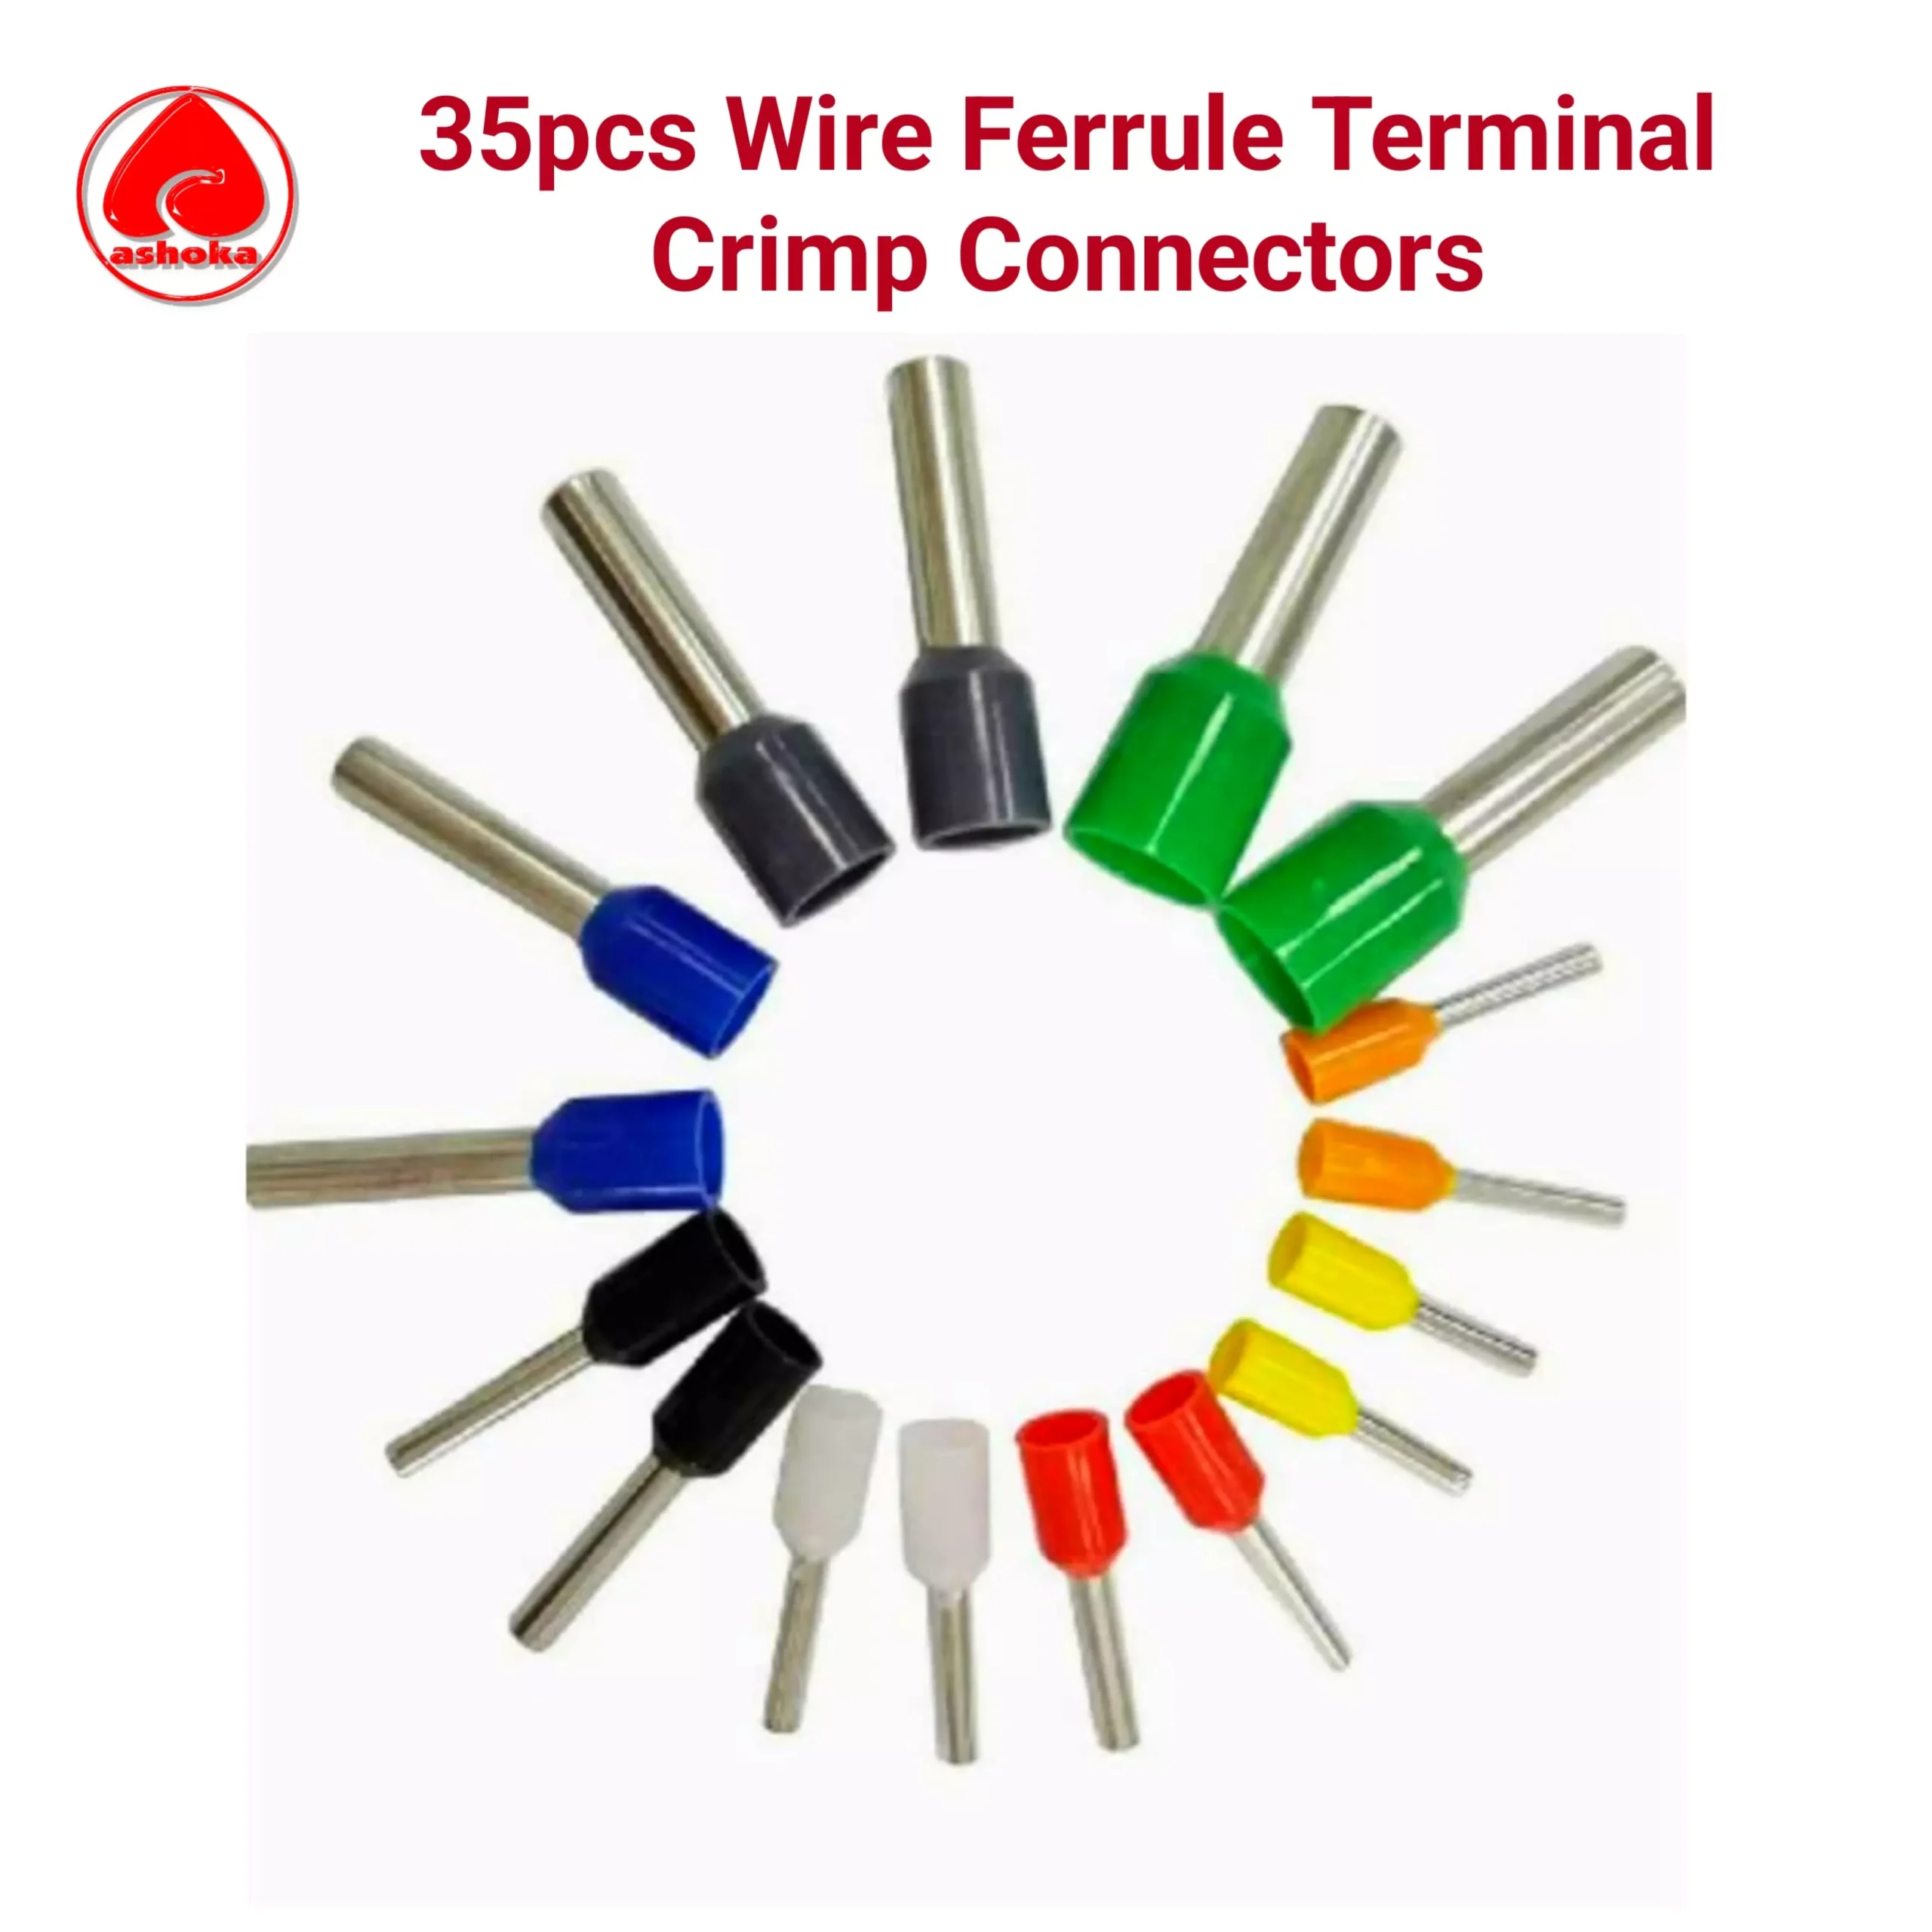 Wire Ferrule Crimp connectors